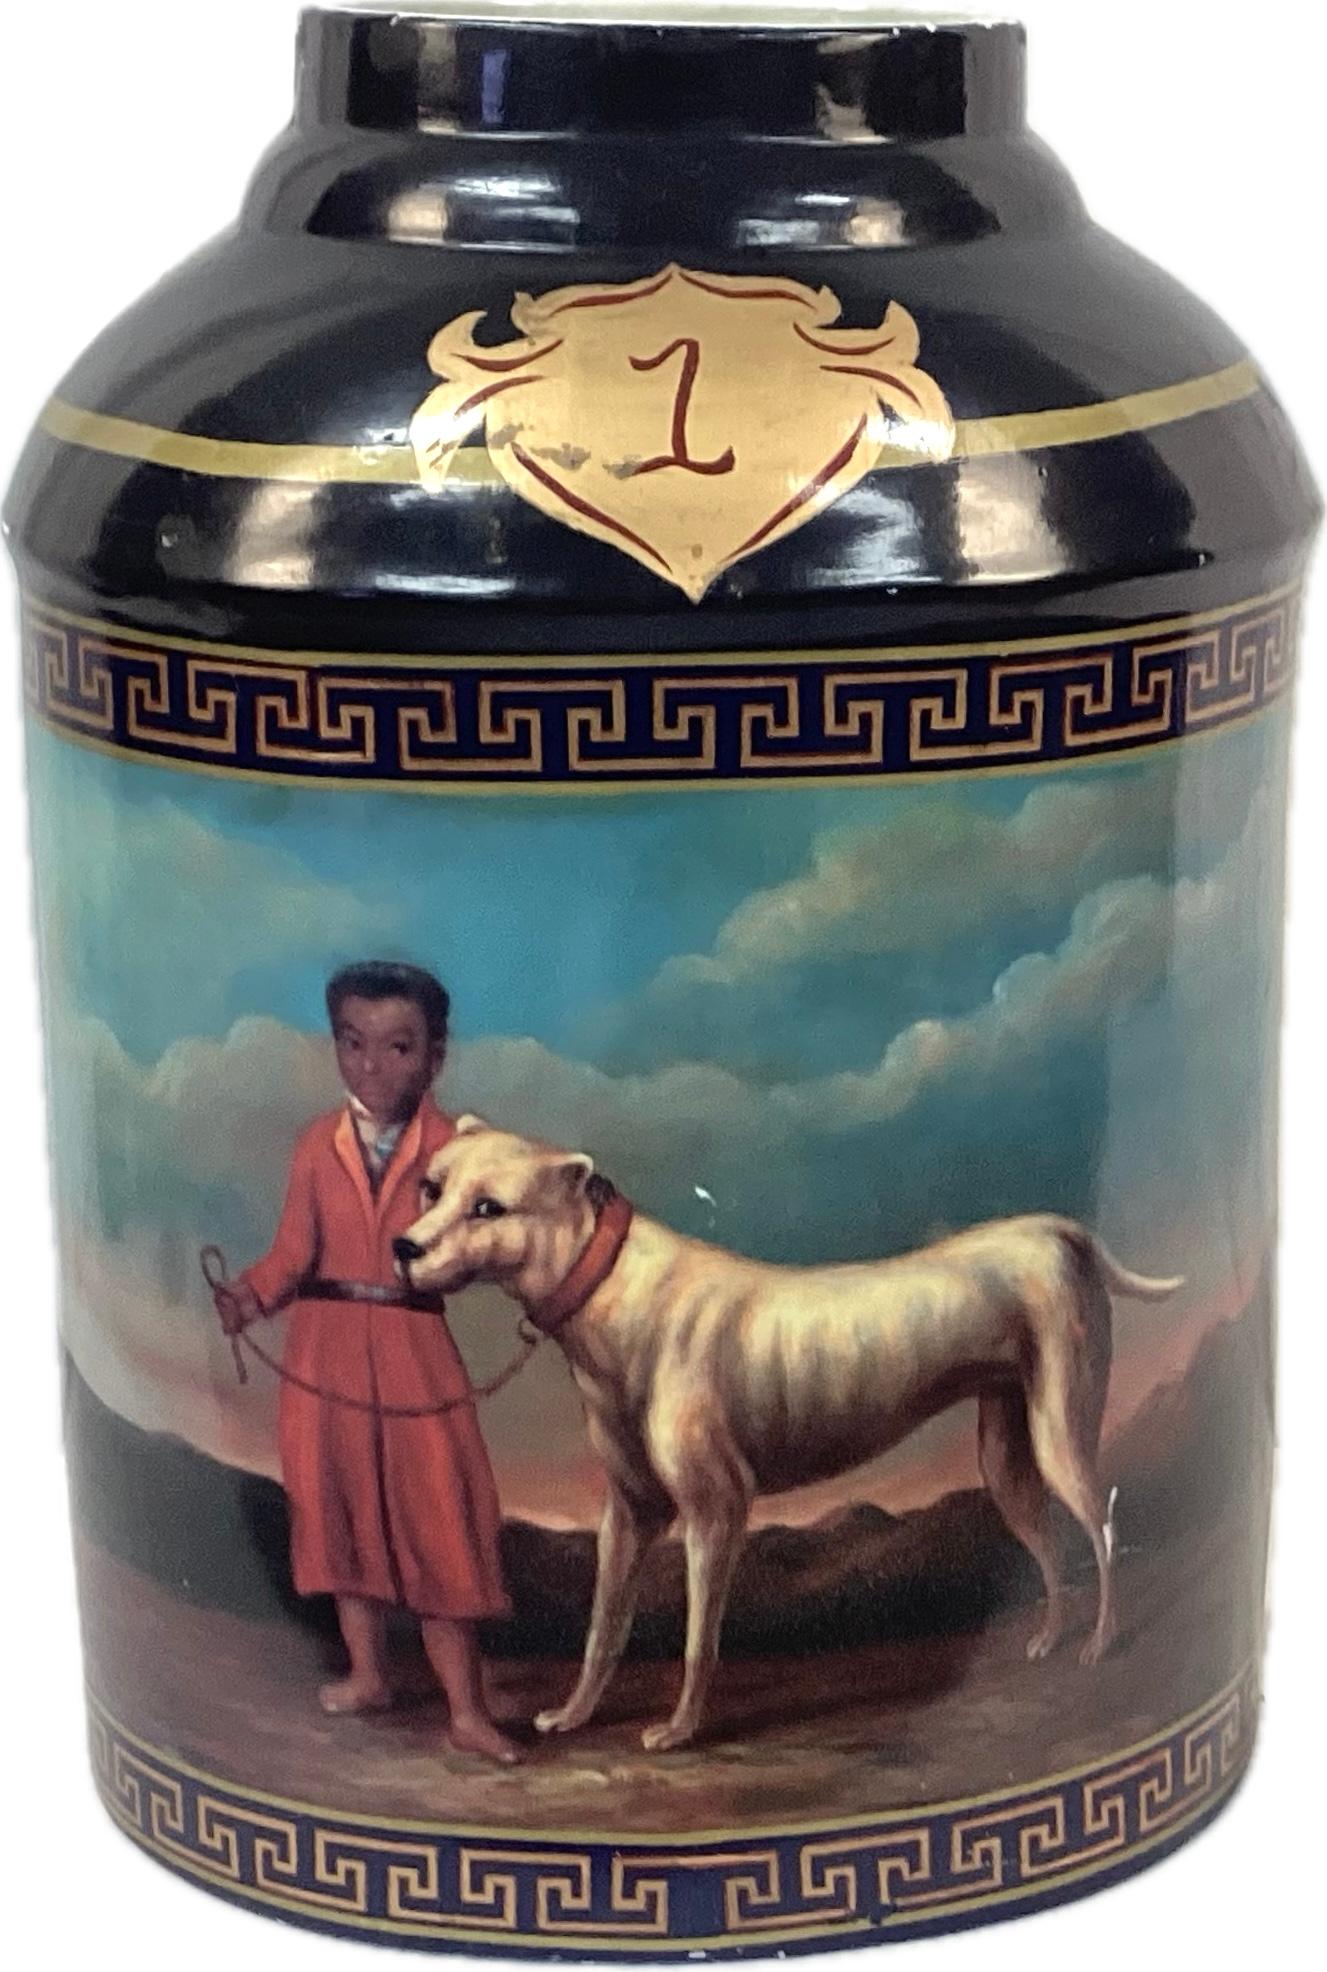 Chinesischer Export, handbemaltes Porzellan, Teedose. Die Bilder eines Jungen und seines Hundes zieren beide Seiten des Glases in kräftigen Farben wie Dunkelblau, Gold, Rot und Türkis. Ein Rahmen aus griechischen Tasten umrahmt die Szene. Diese Art